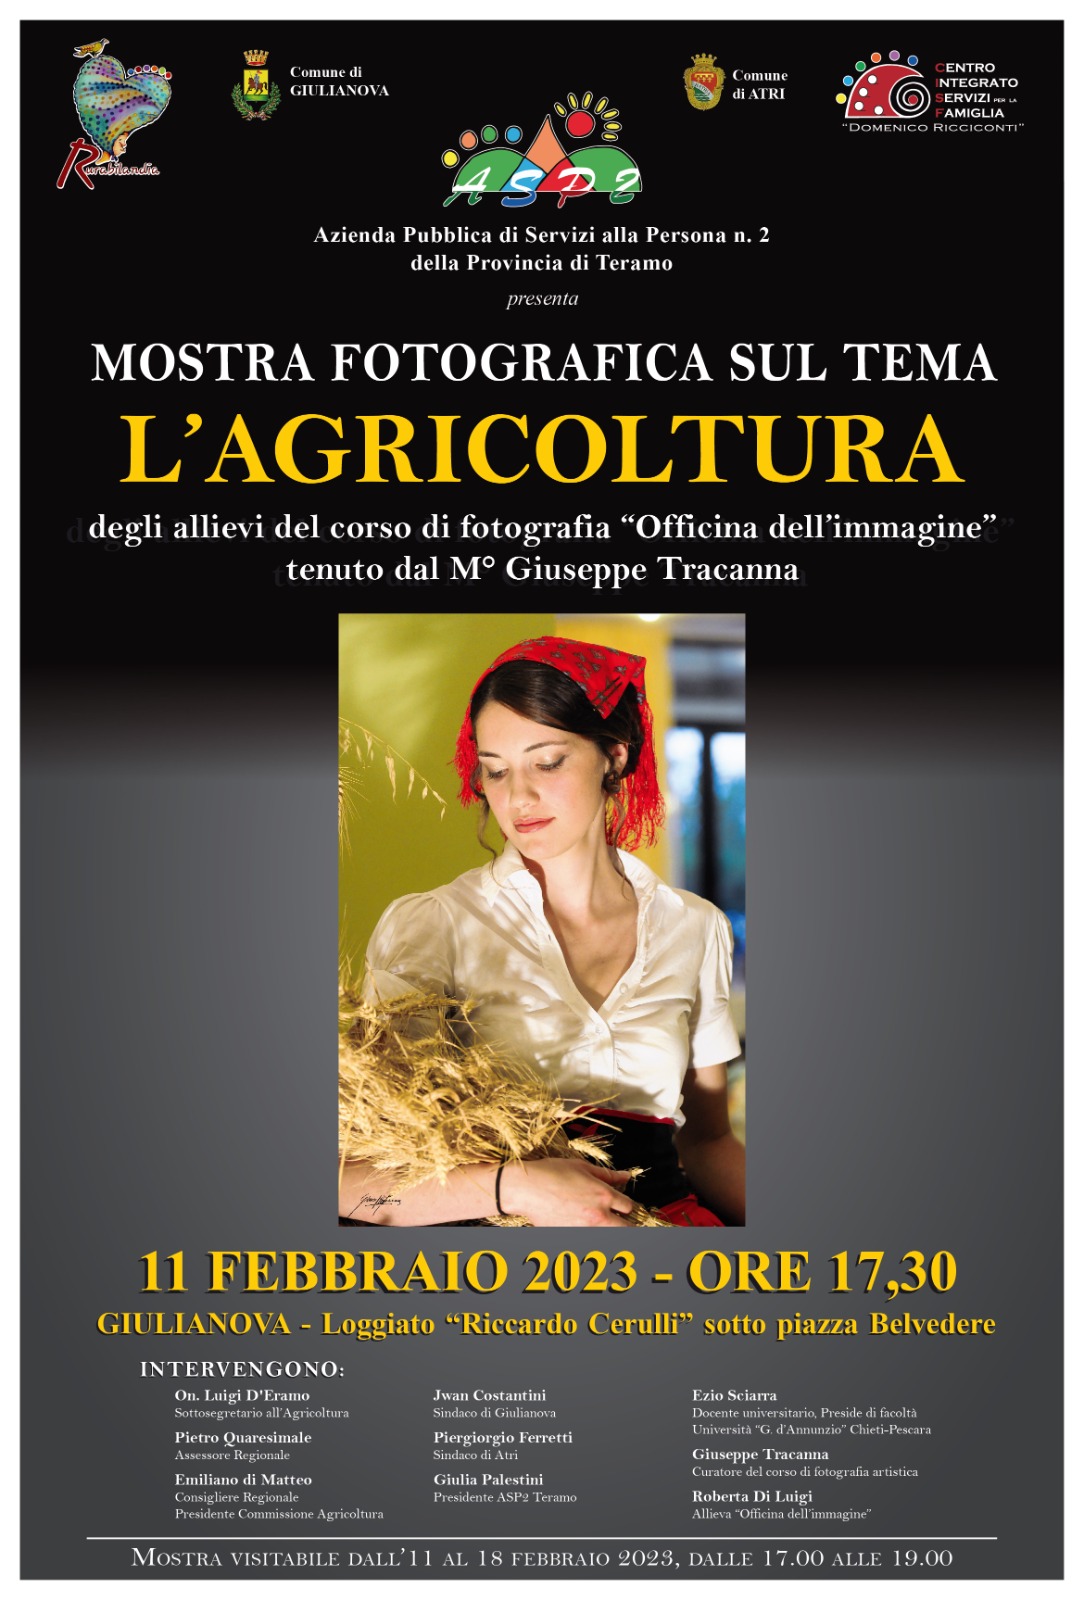 Giulianova. Mostra fotografica promossa dalla ASP2: “L’Agricoltura” degli allievi dell’Officina dell’Immagine